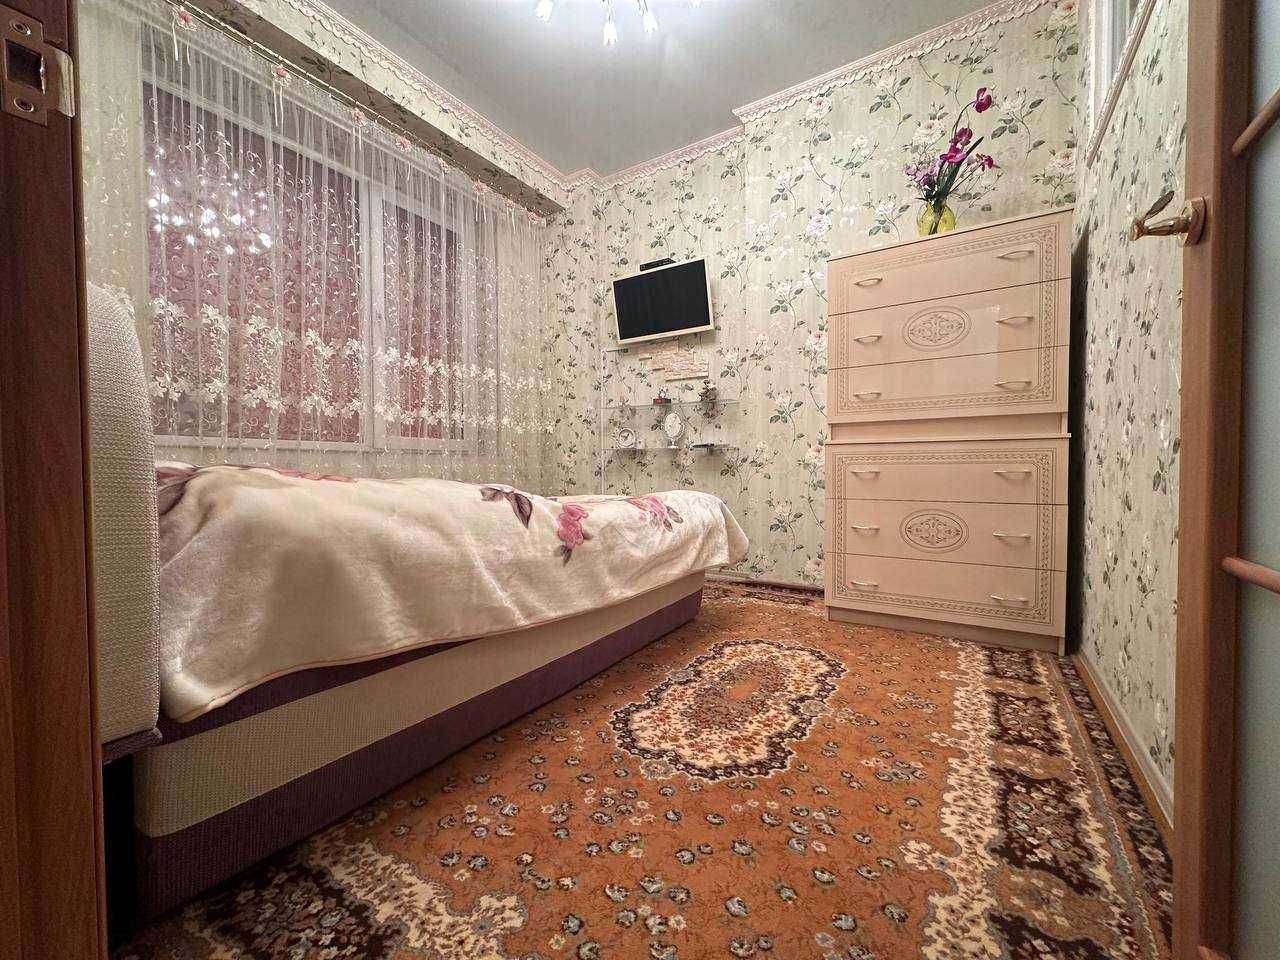 Продам Евродвушку в ЖК "Армейский" с ремонтом и мебелью.